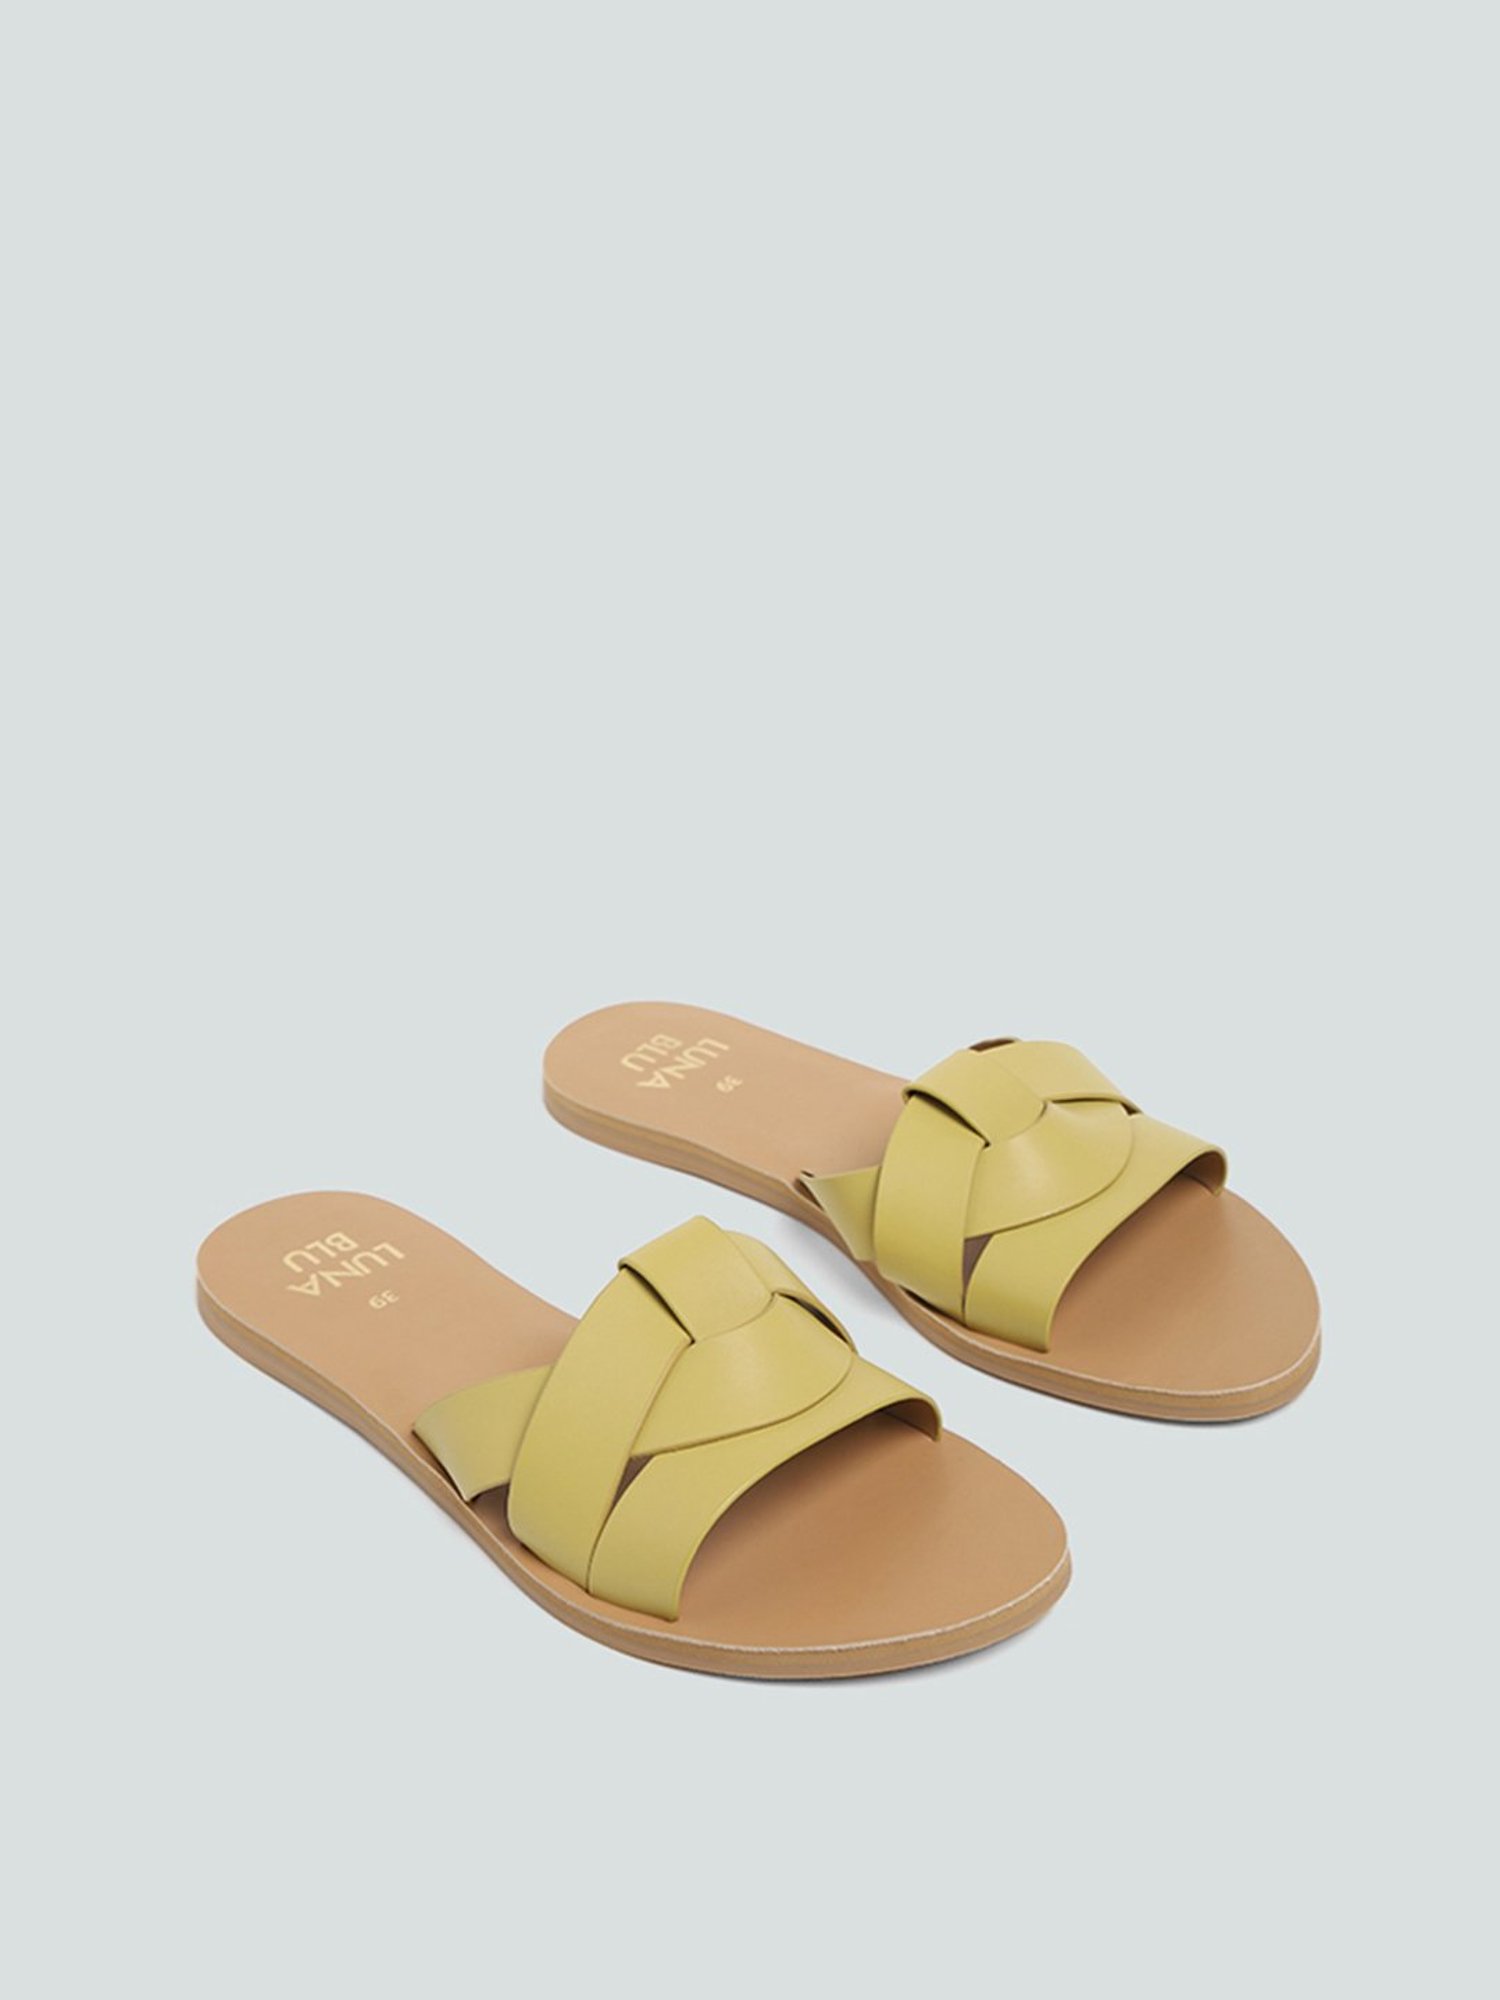 Luna Flats Sandals for Women | Mercari